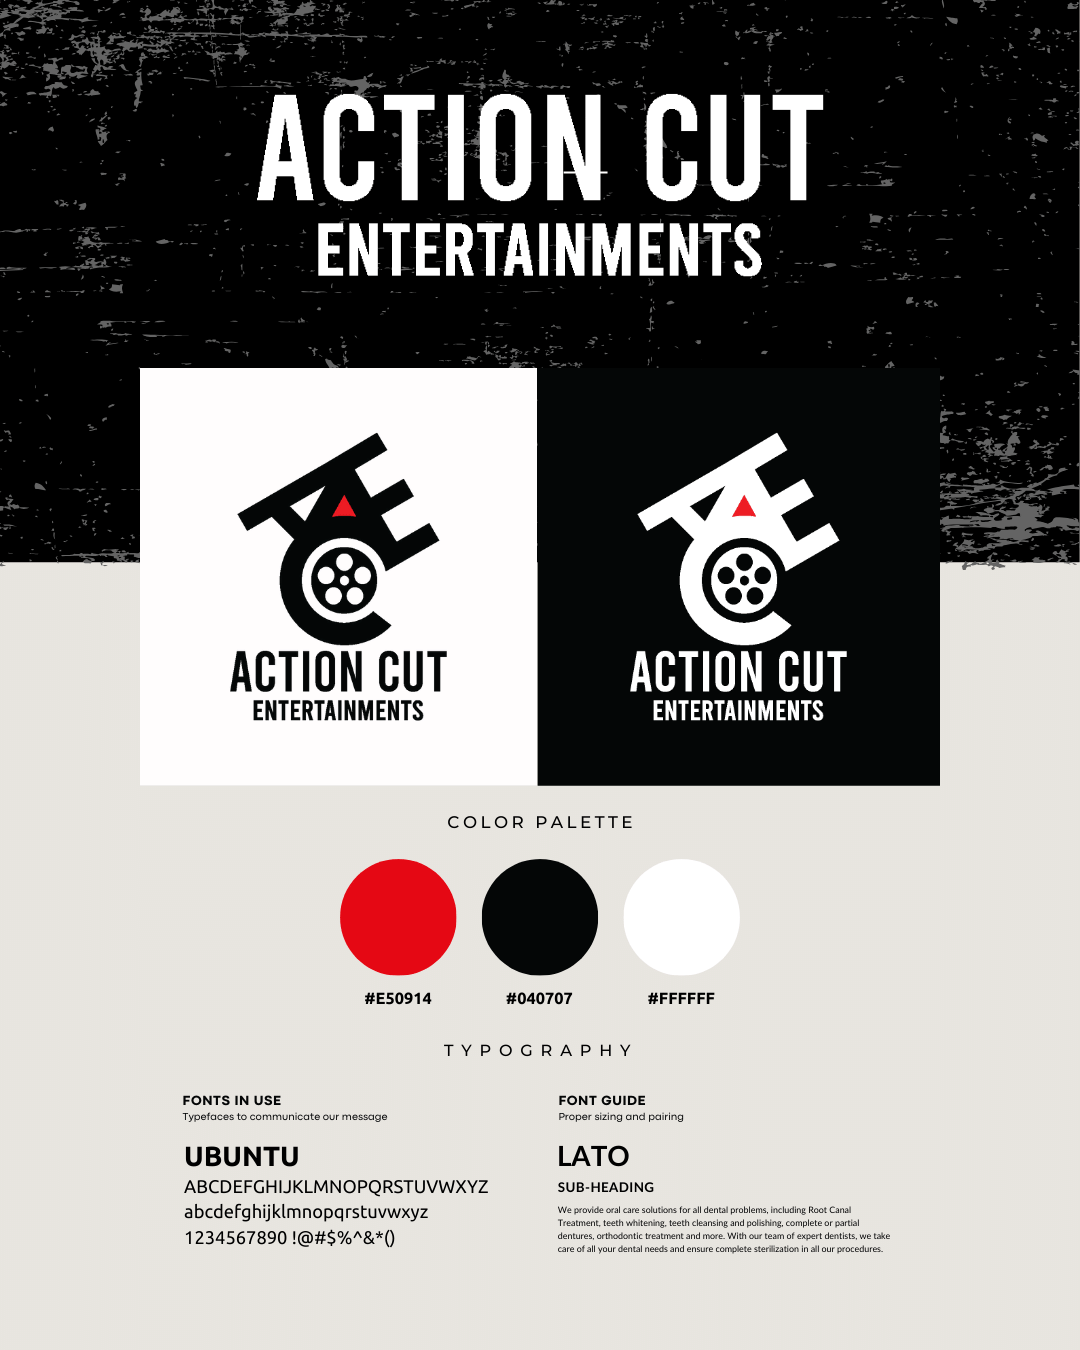 Action Cut Entertainments